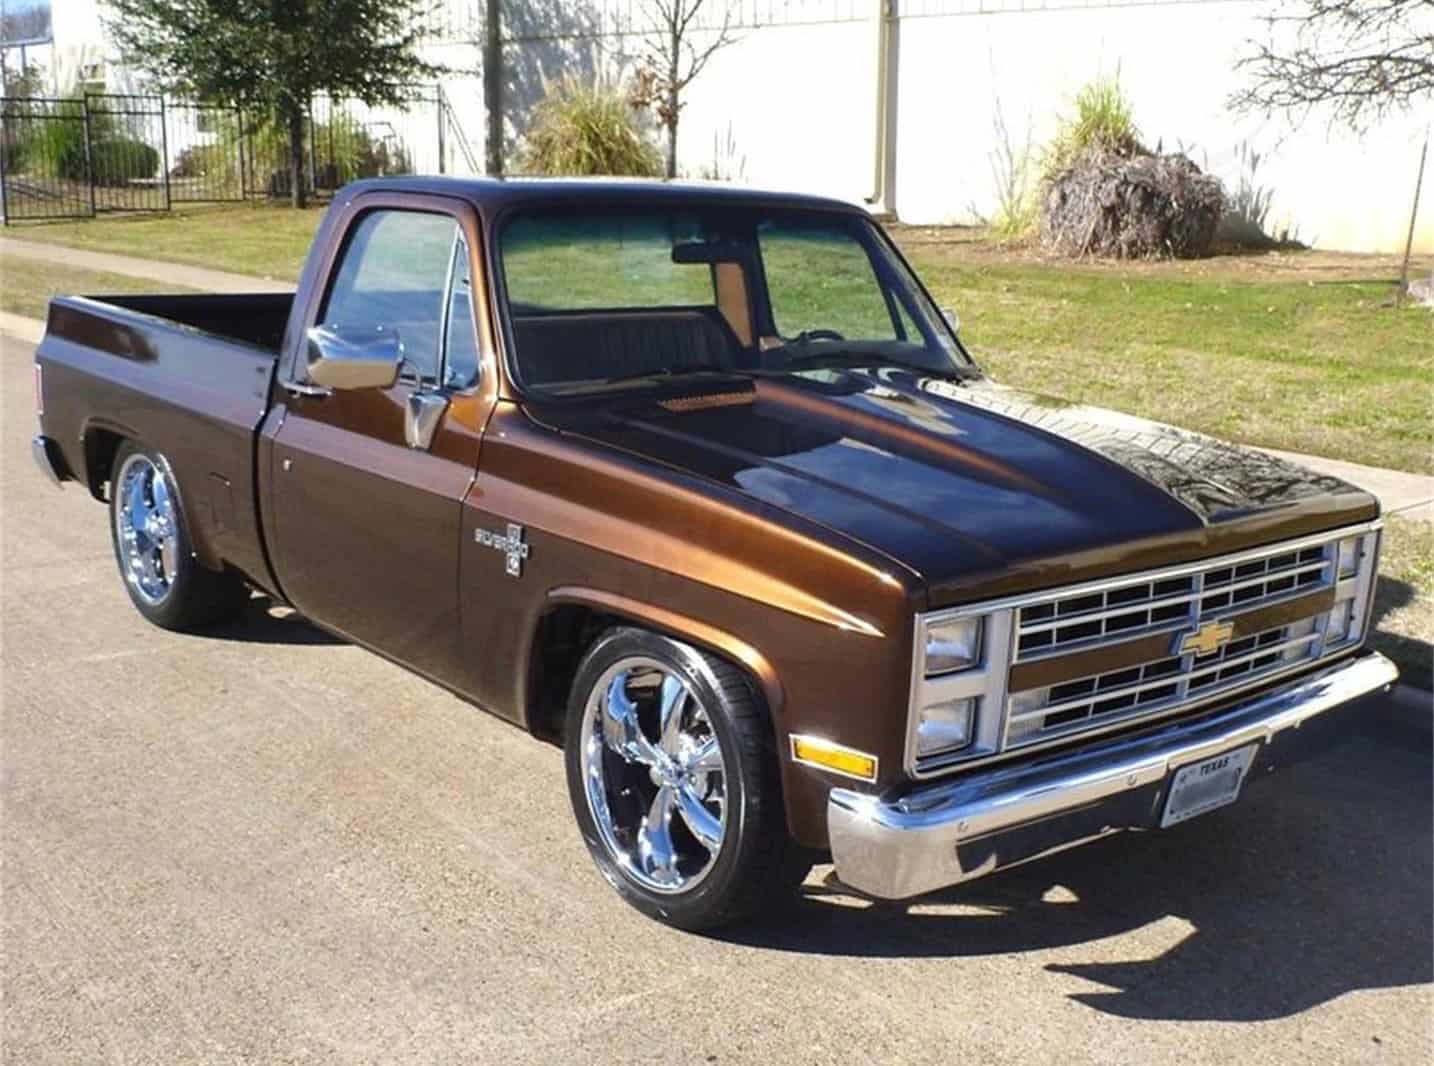 Remember when Chevy built R/V pickup trucks?